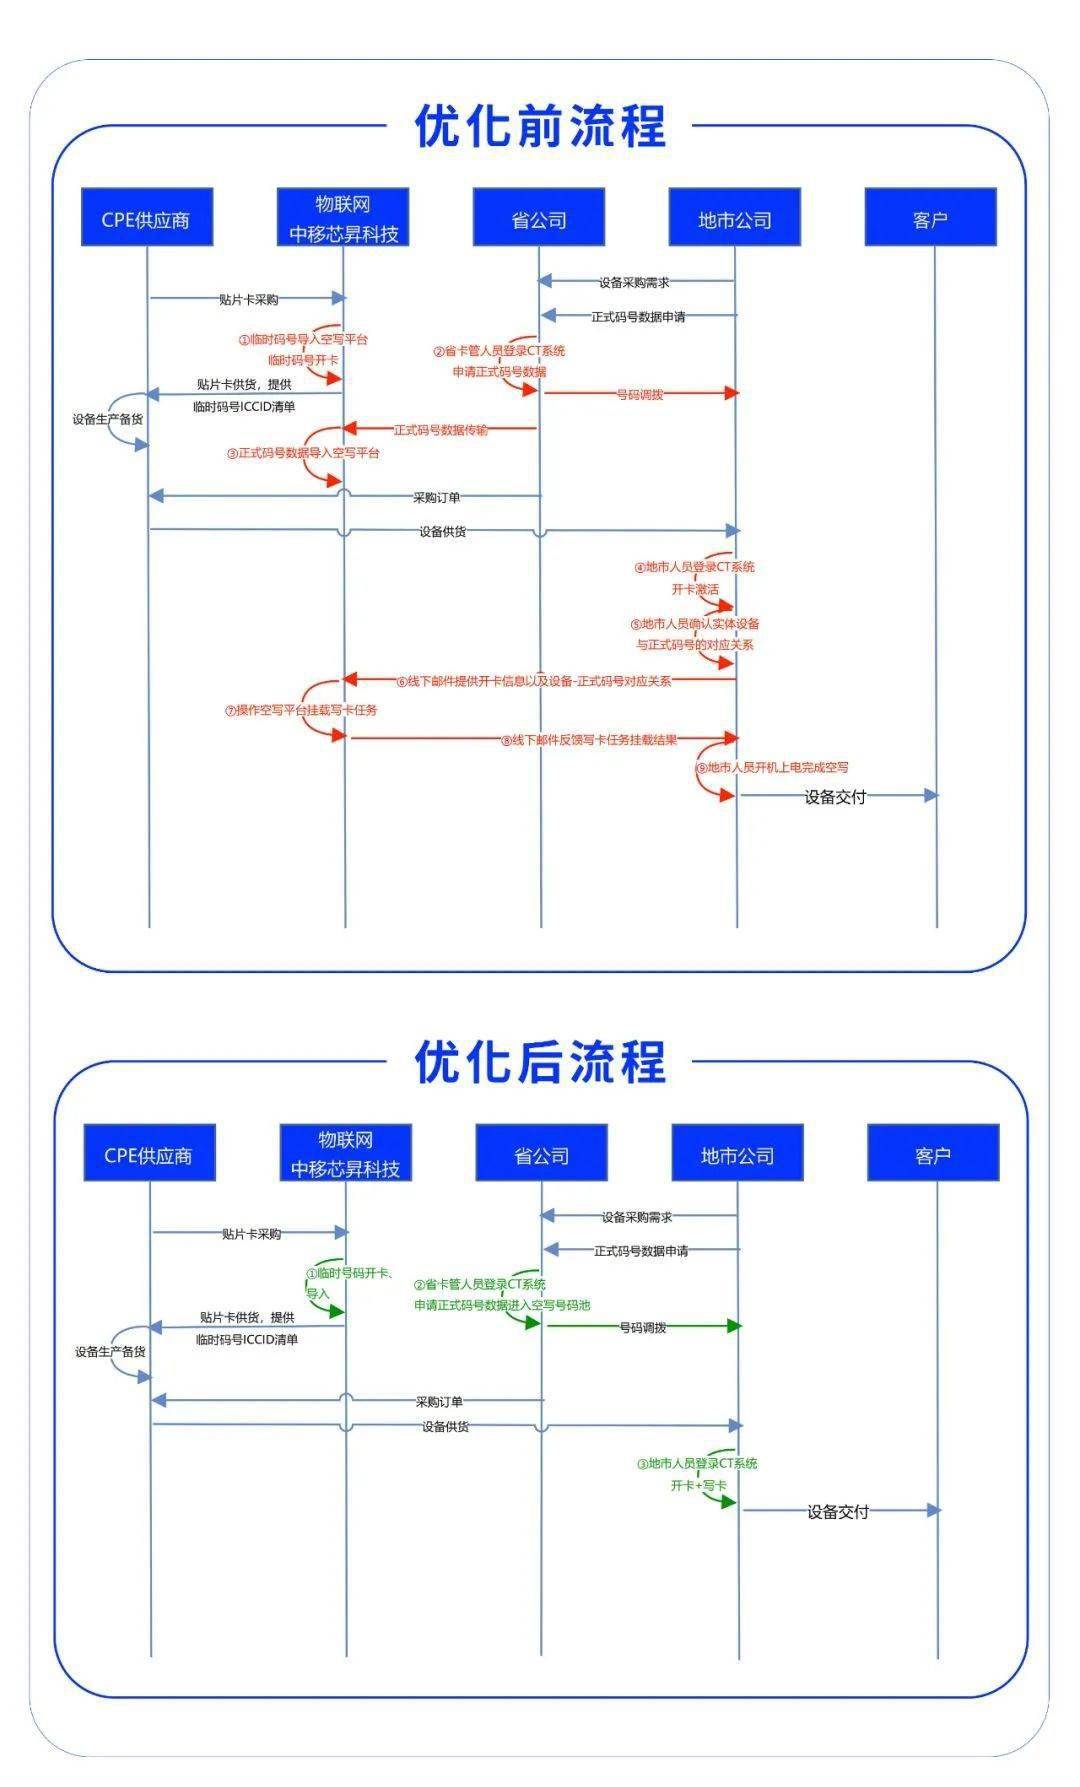 中国移动芯昇科技“eSIM+”技术发布 大幅优化业务流程环节与参与角色